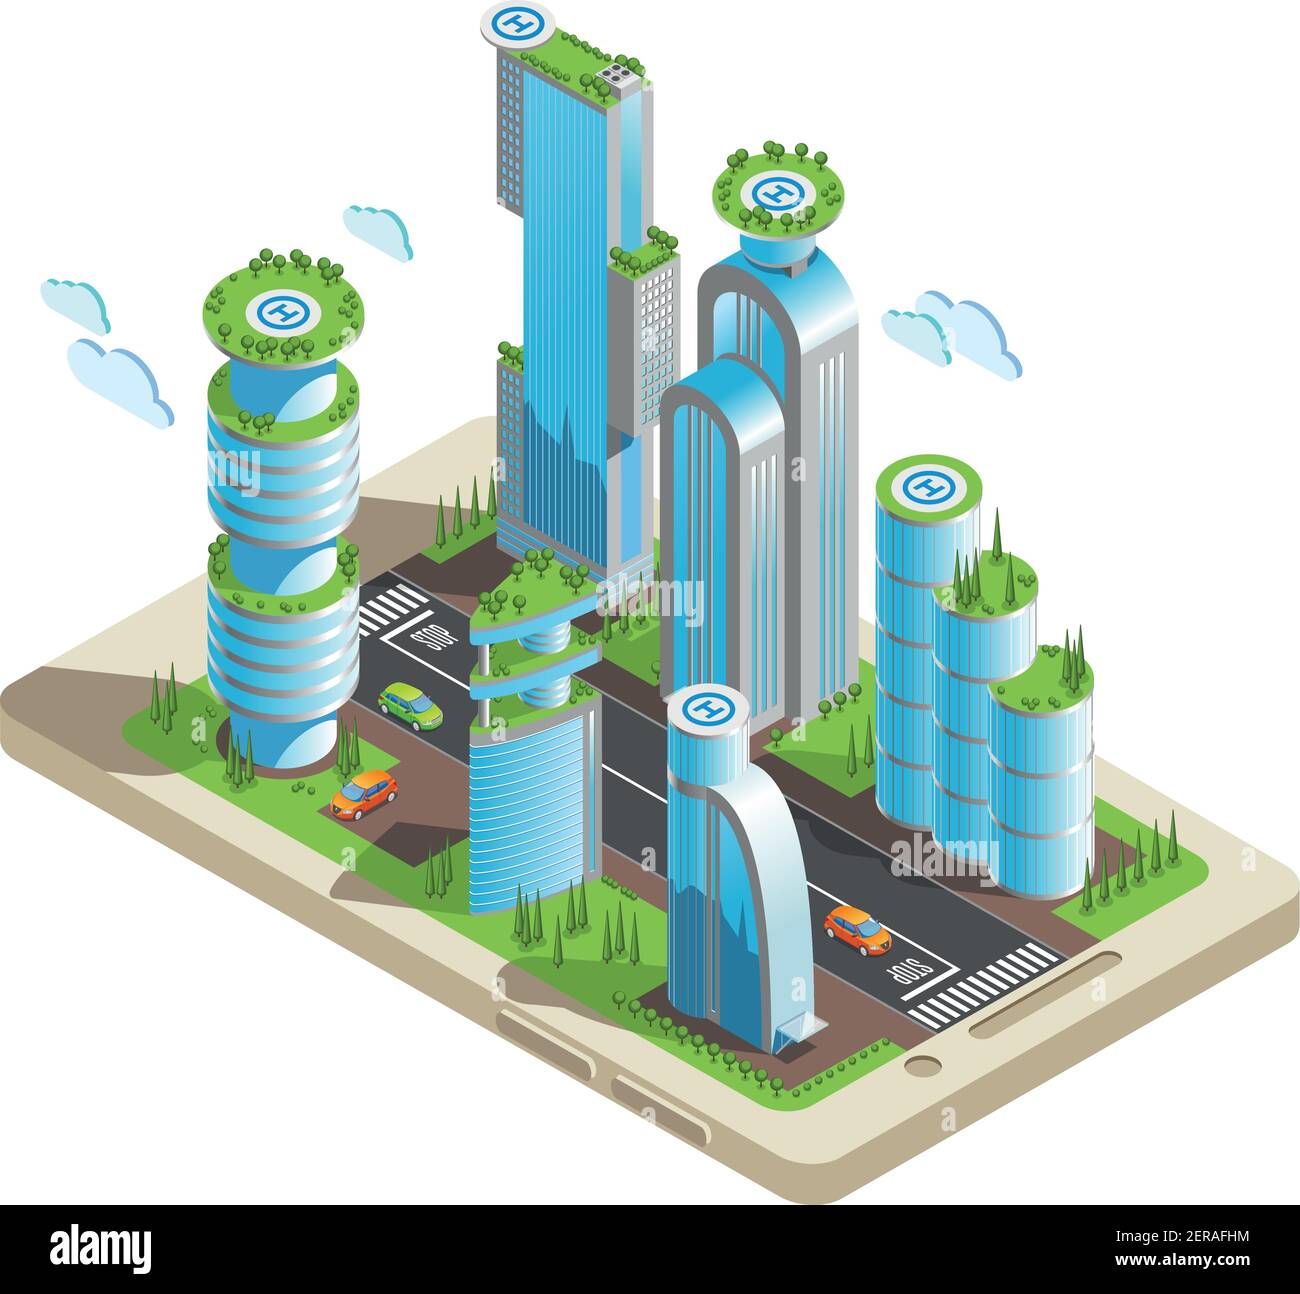 Grattacieli futuristici isometrici colorati composizione parte della città con grattacieli in stile 3d situati sul vettore dello schermo dello smartphone illustratio Illustrazione Vettoriale